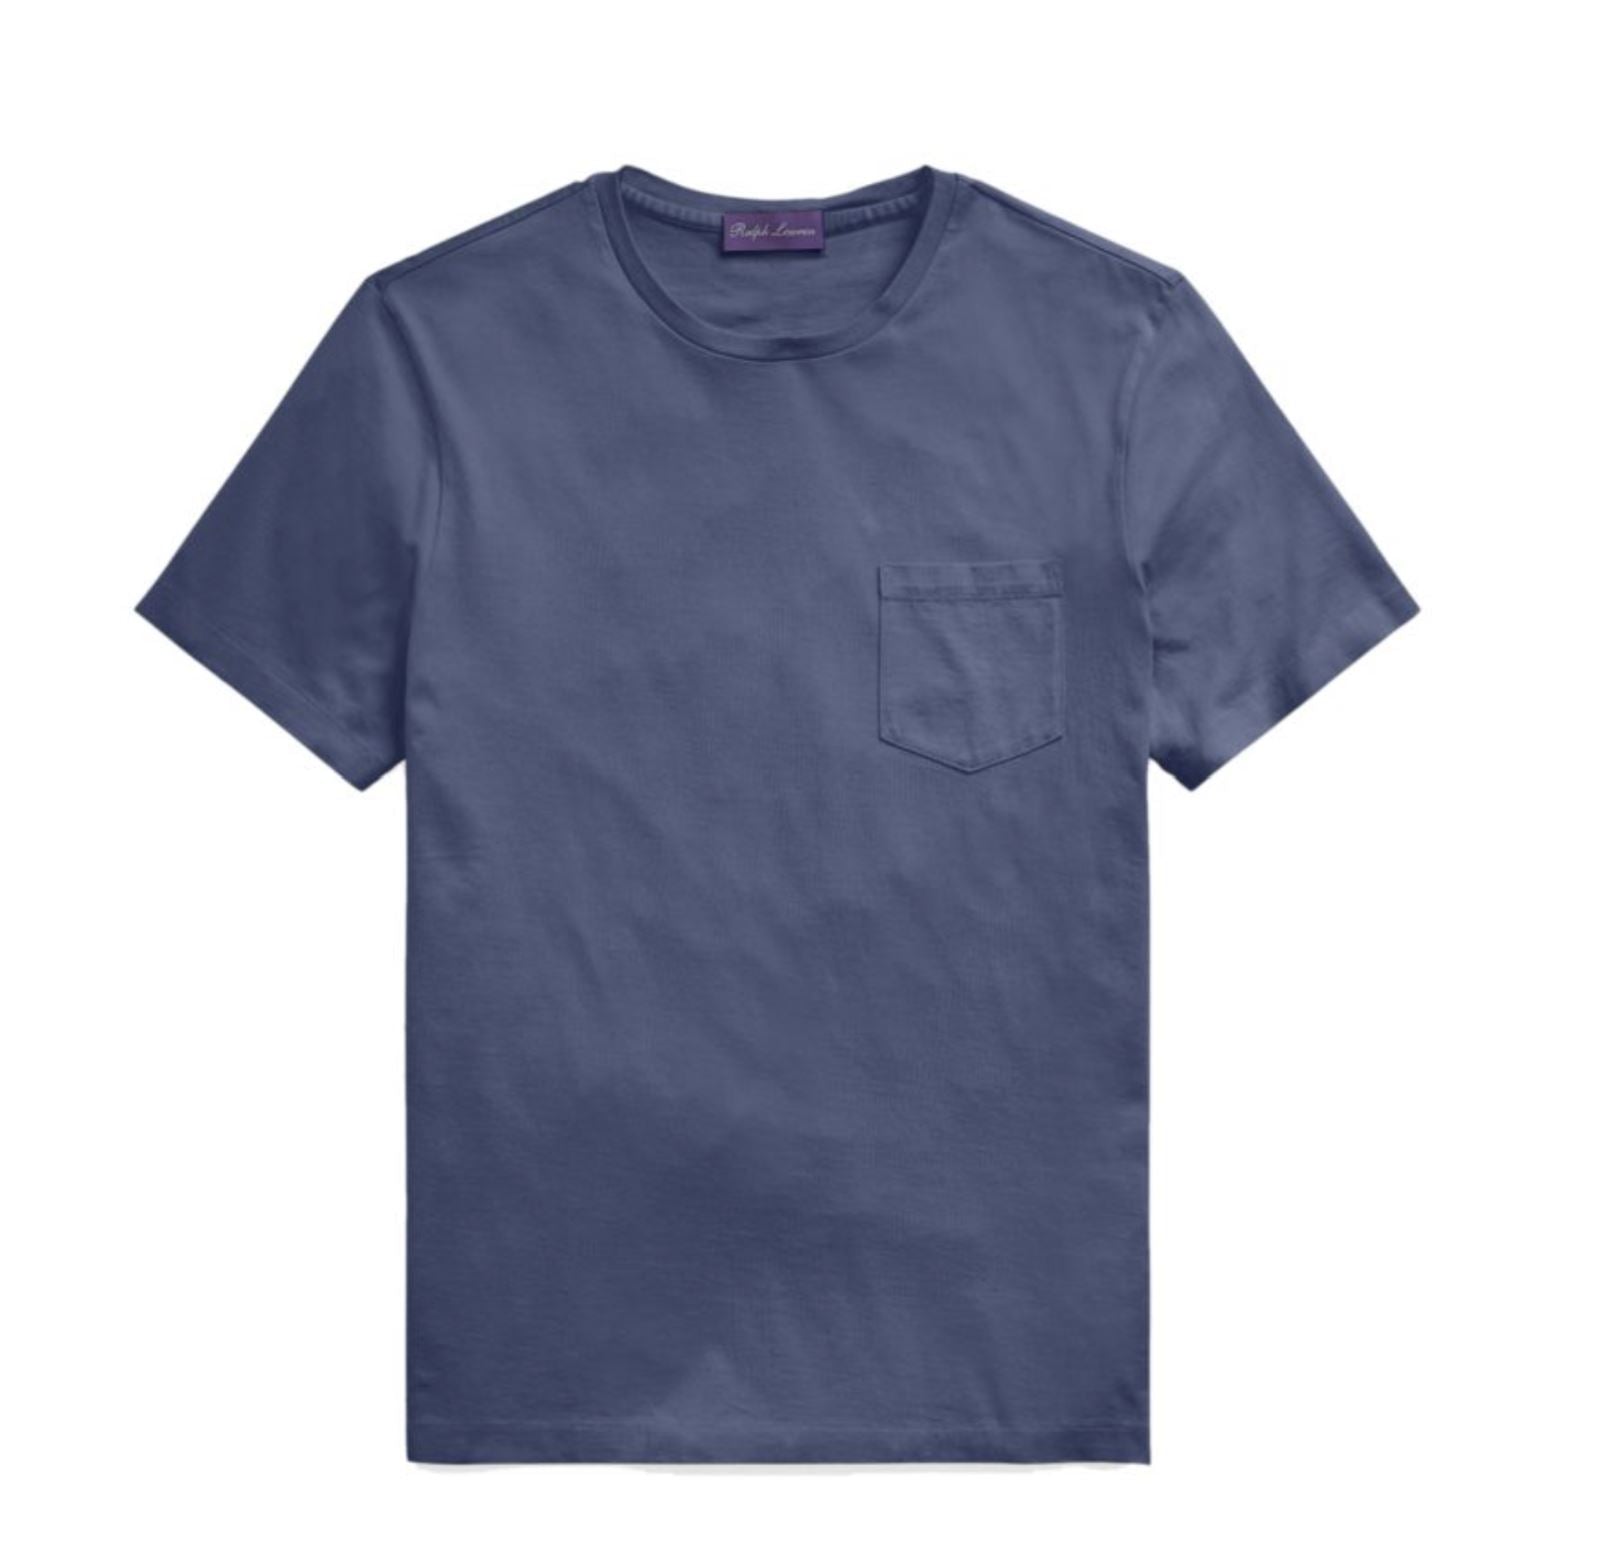 NWT $195 Ralph Lauren Purple Label Cotton Blue Pocket T-Shirt Large